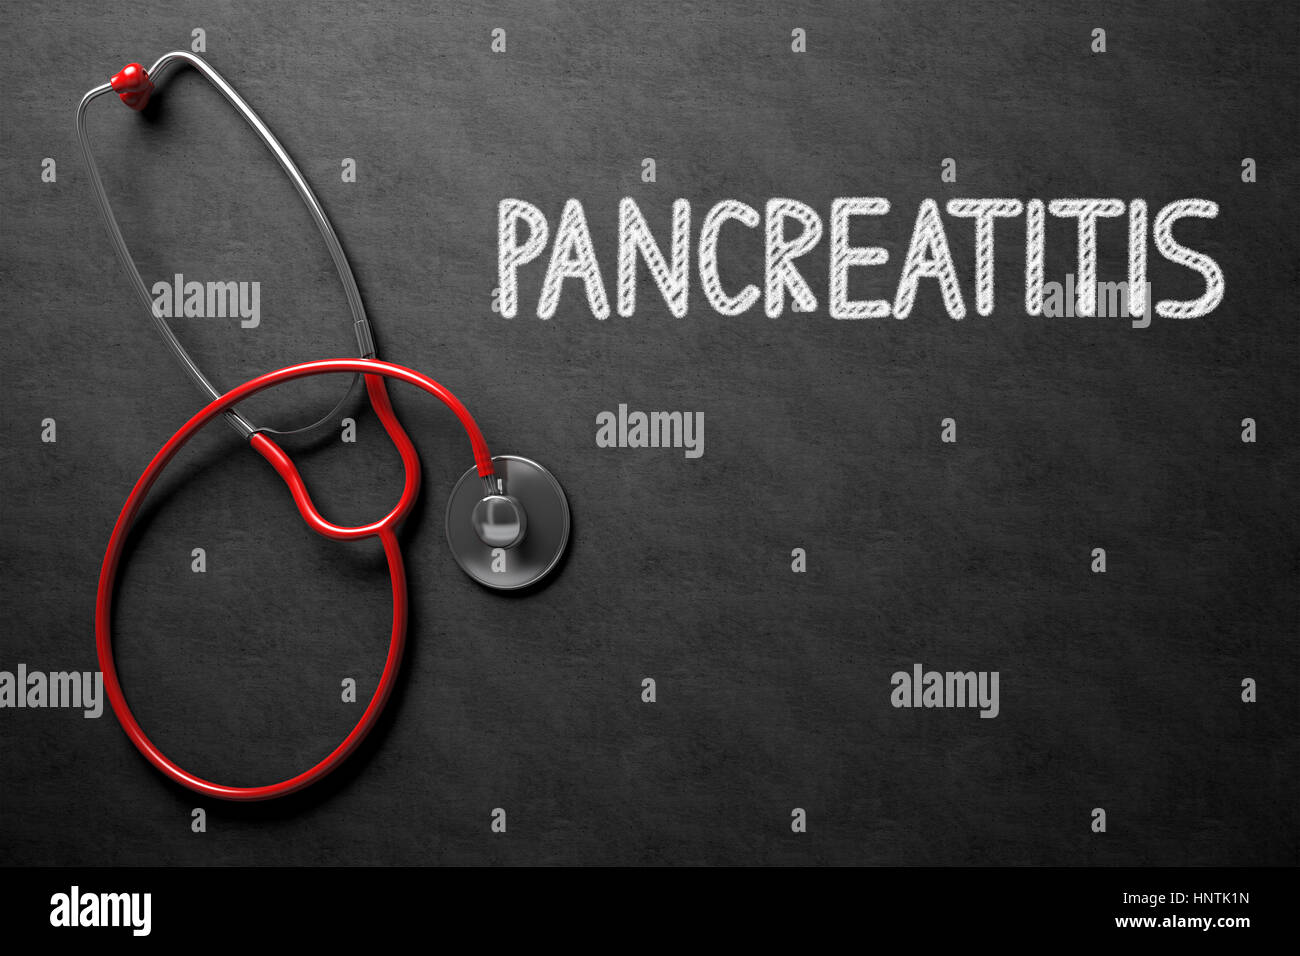 Pancreatitis - Text on Chalkboard. 3D Illustration. Stock Photo